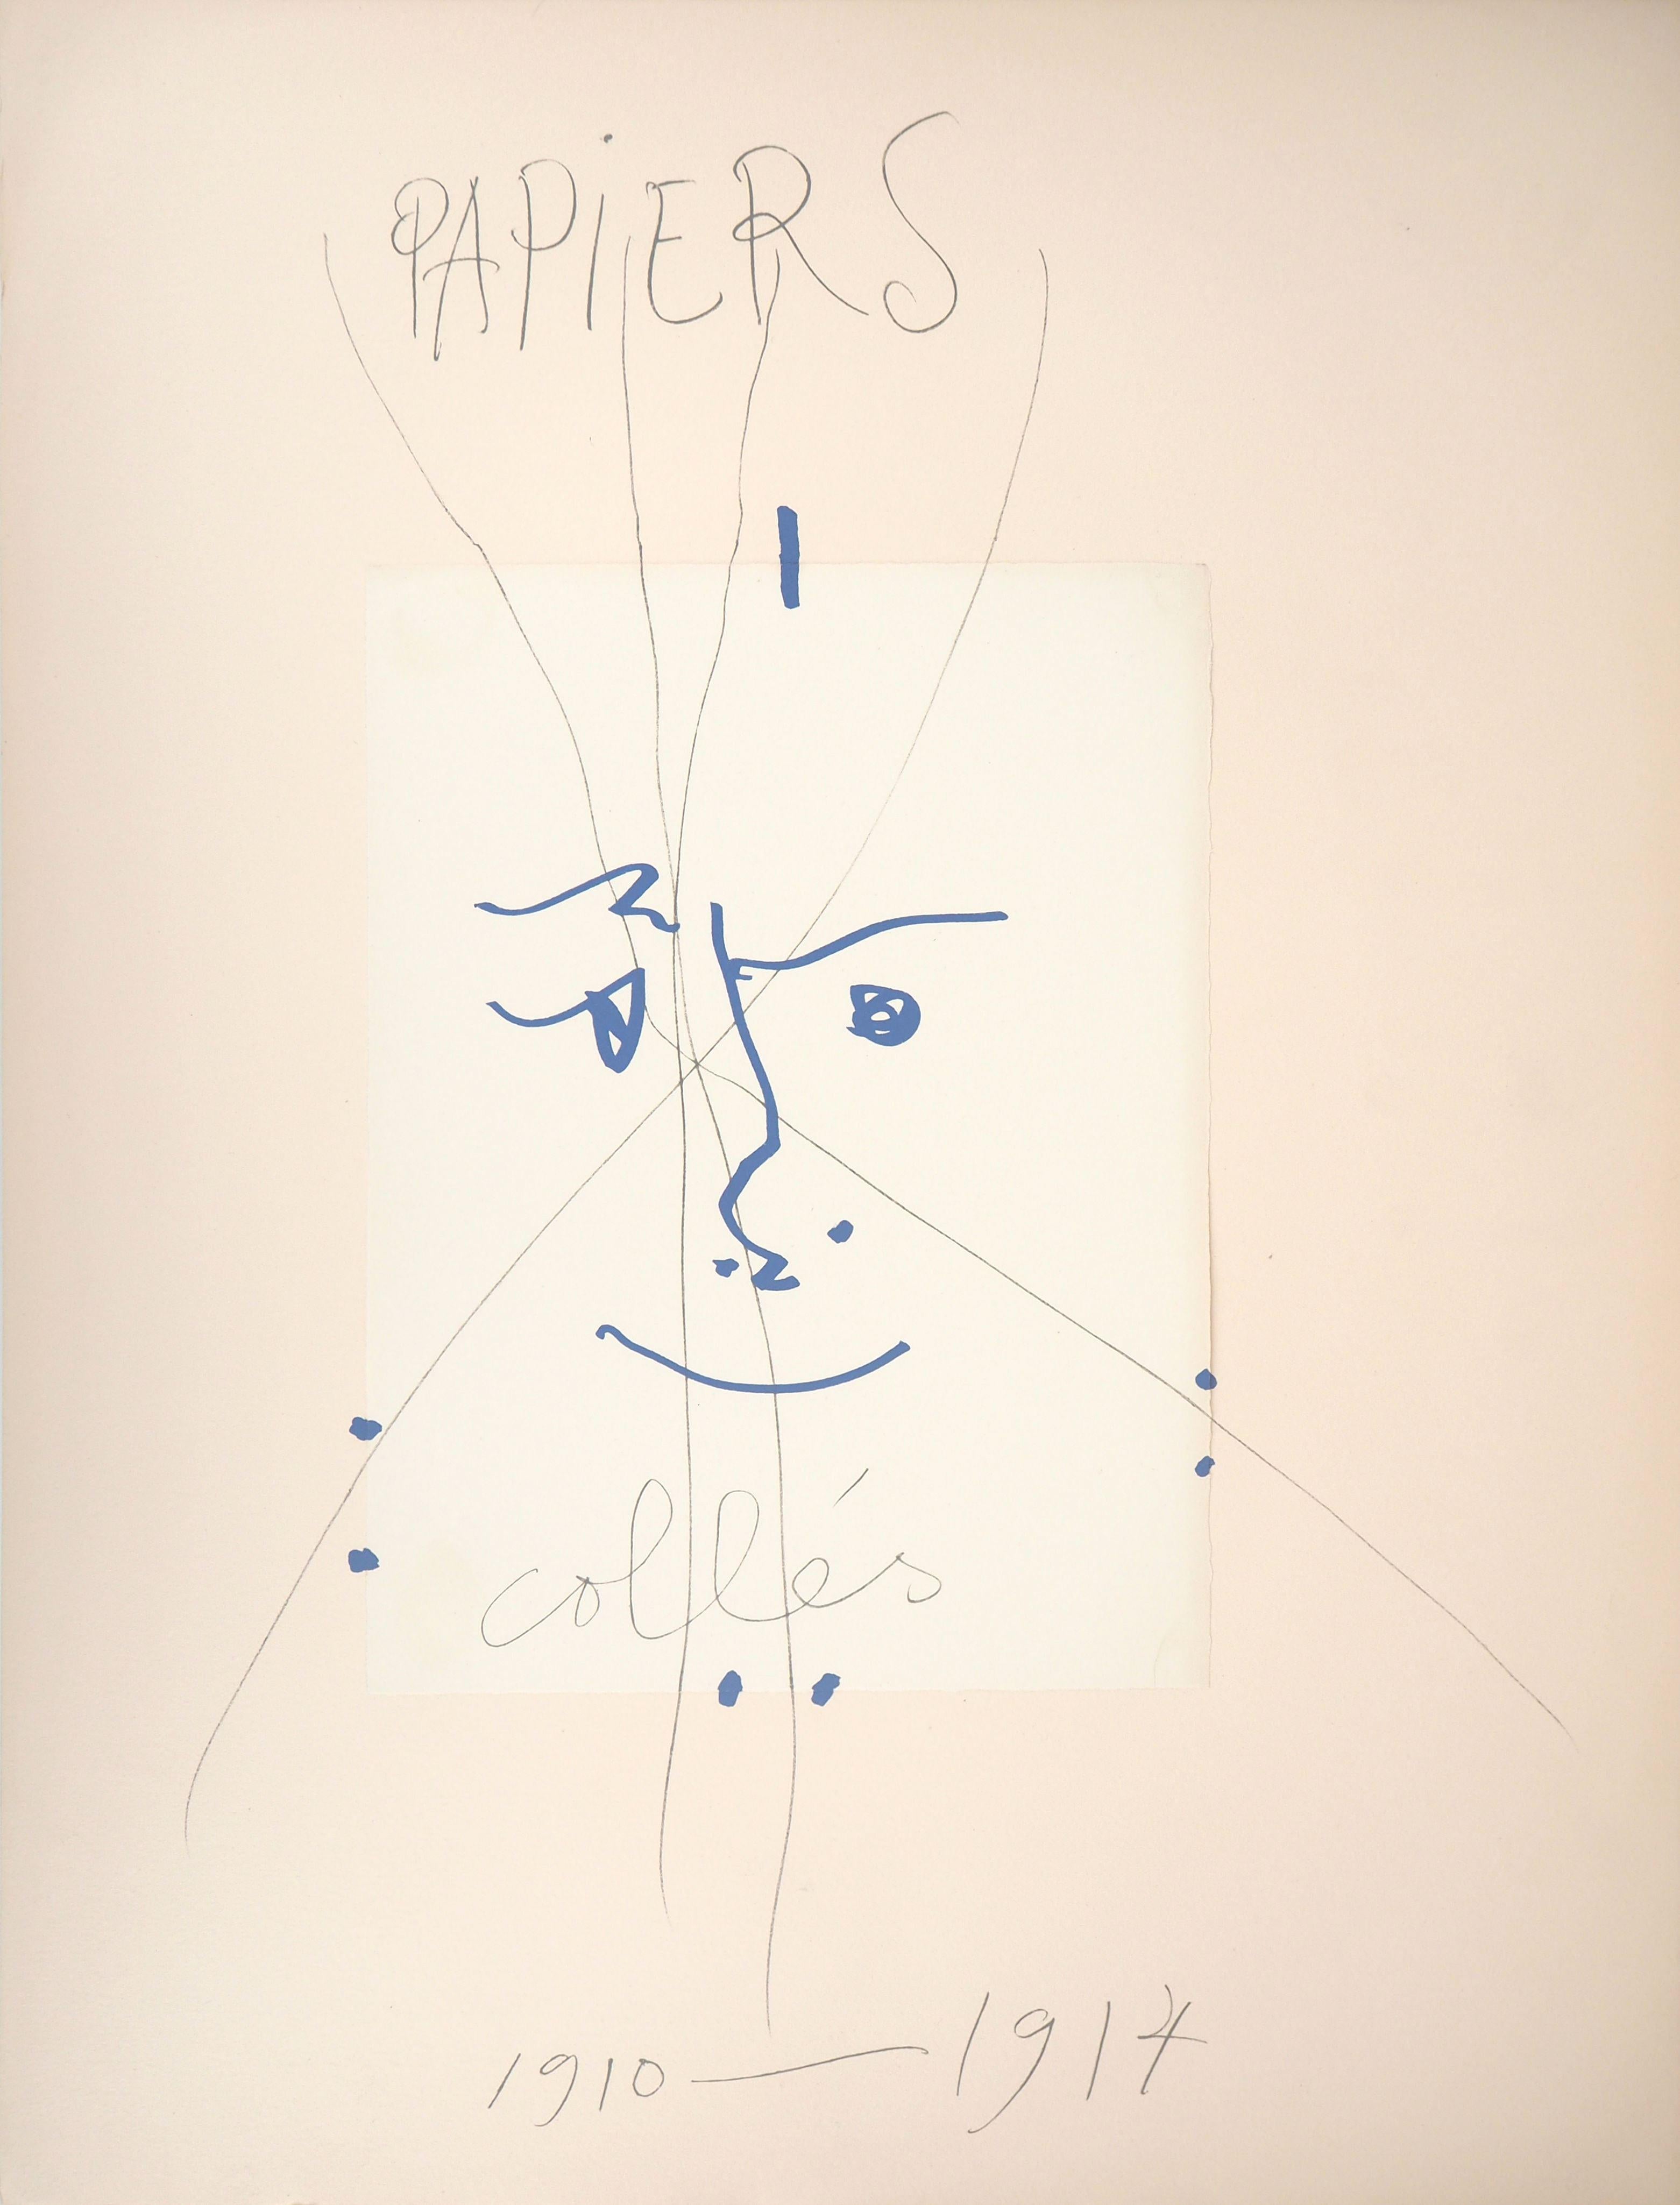 Pablo Picasso Figurative Print - Papiers Collés 1910-1914 - Lithograph #Mourlot